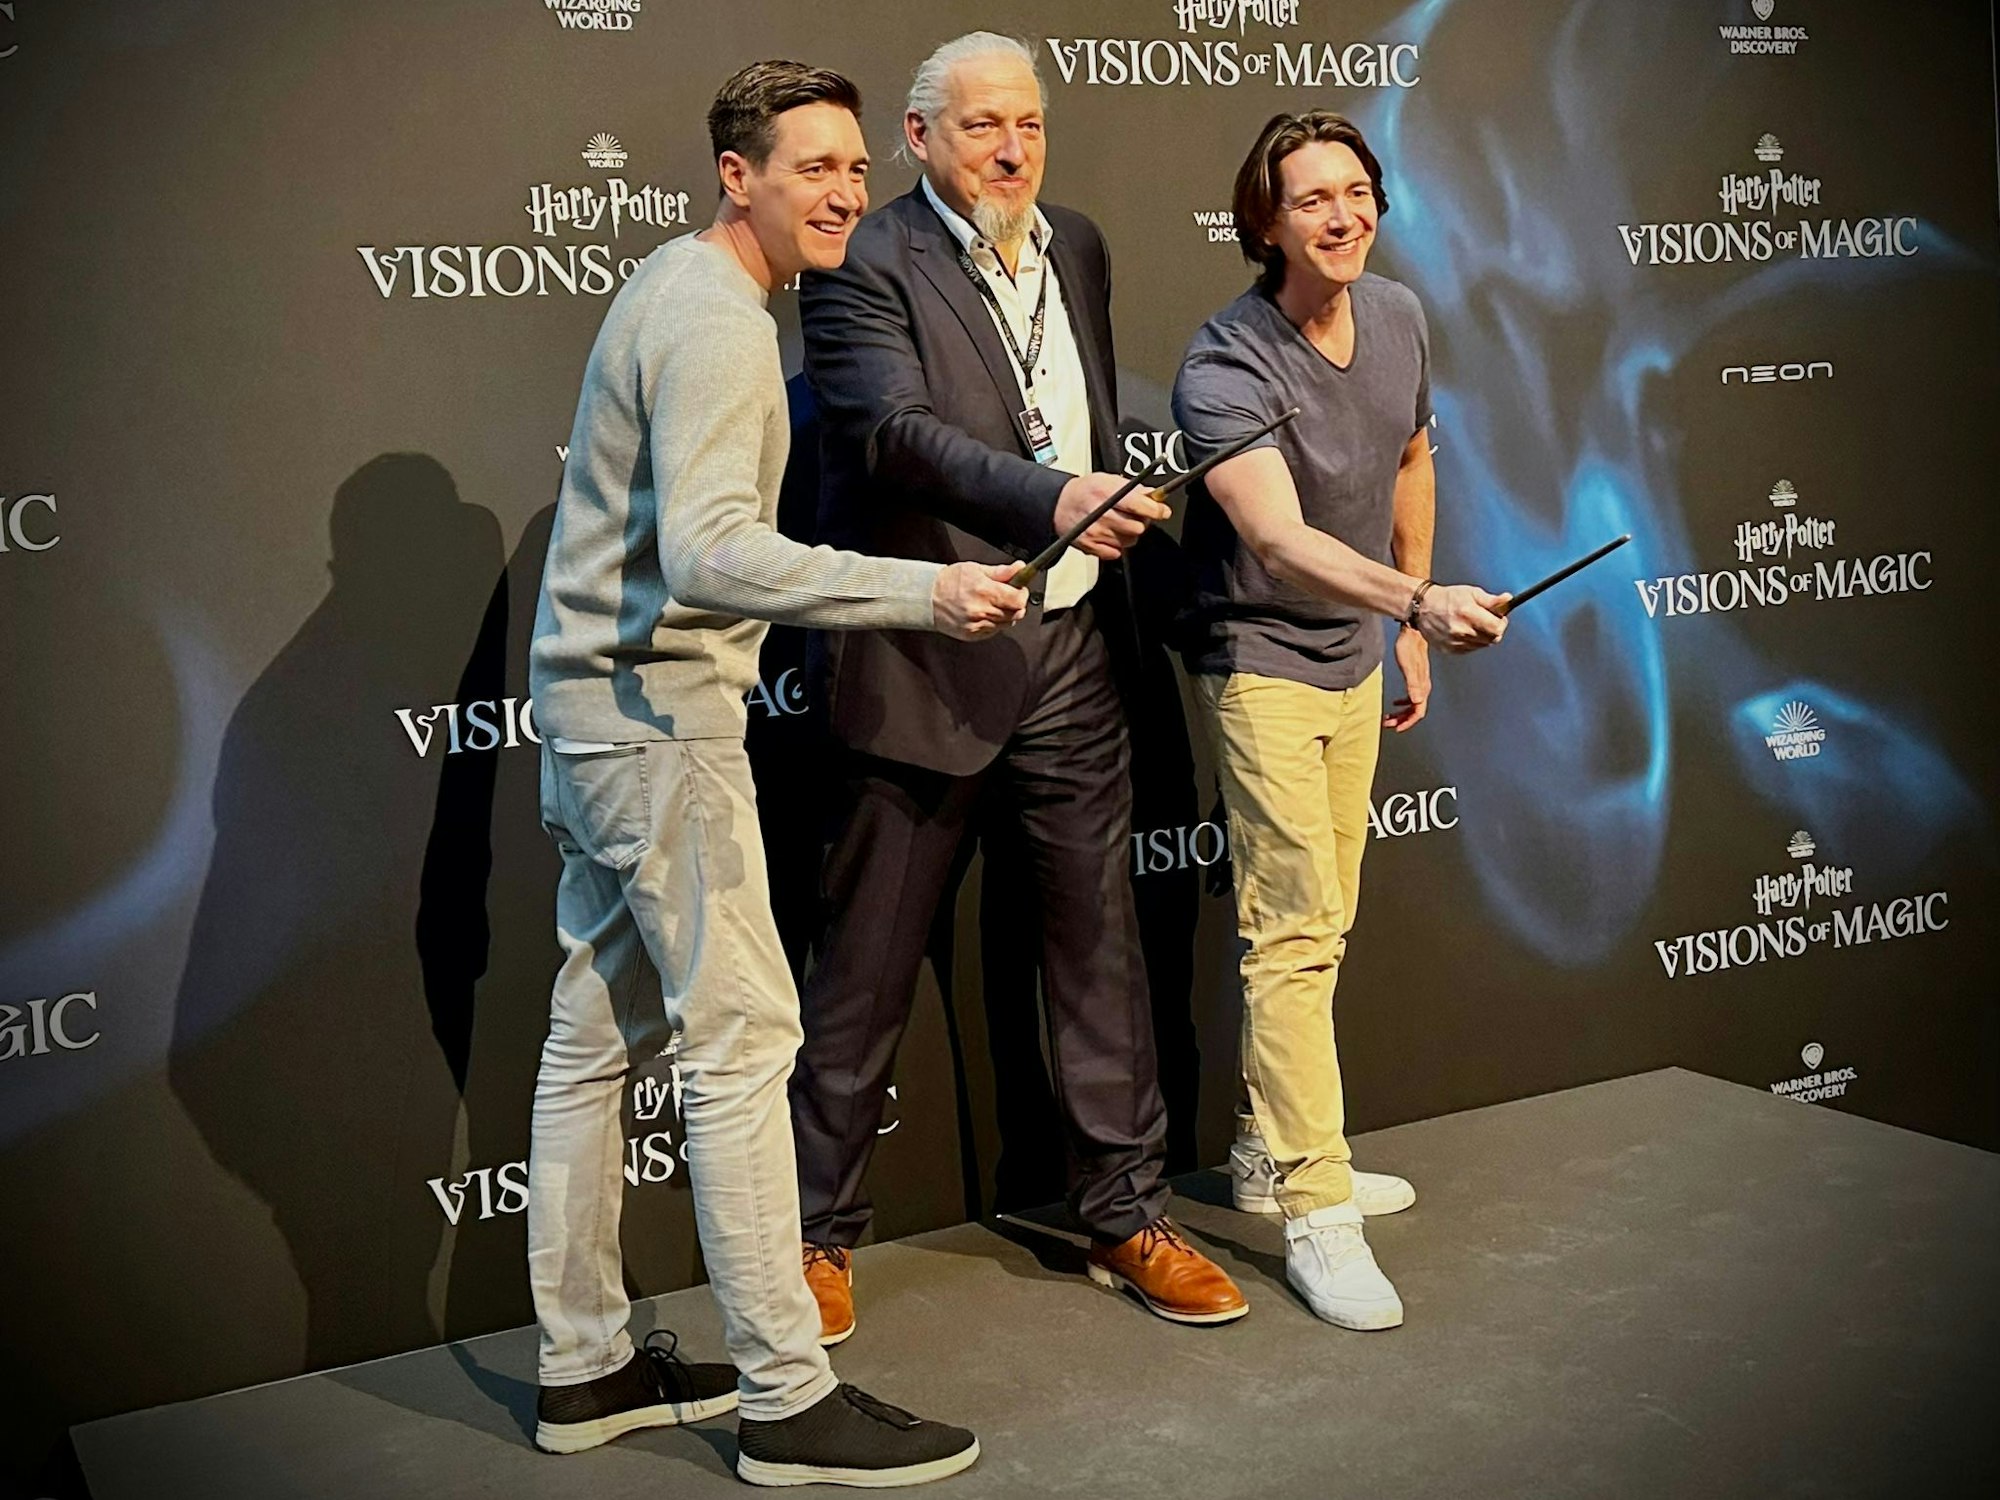 Oliver Phelps, Andreas Waschk und James Phleps bei der Weltpremiere von Harry Potter: Visions of Magic im Odysseum in Köln.